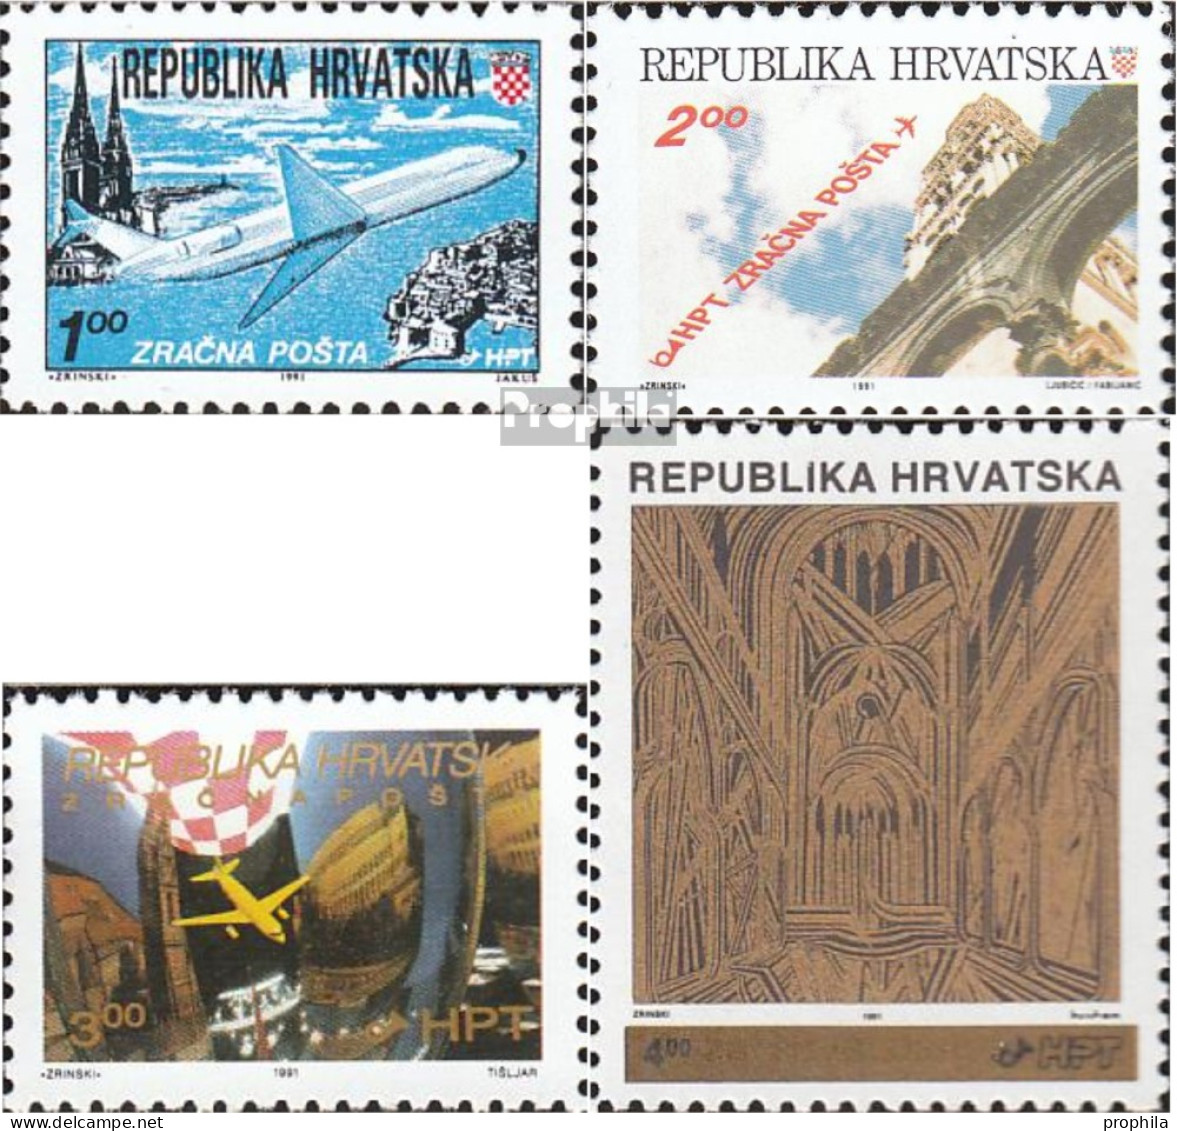 Kroatien 179A,180A A,181,182A (kompl.Ausg.) Postfrisch 1991 Flugpost, Aufdruckausgabe - Kroatië